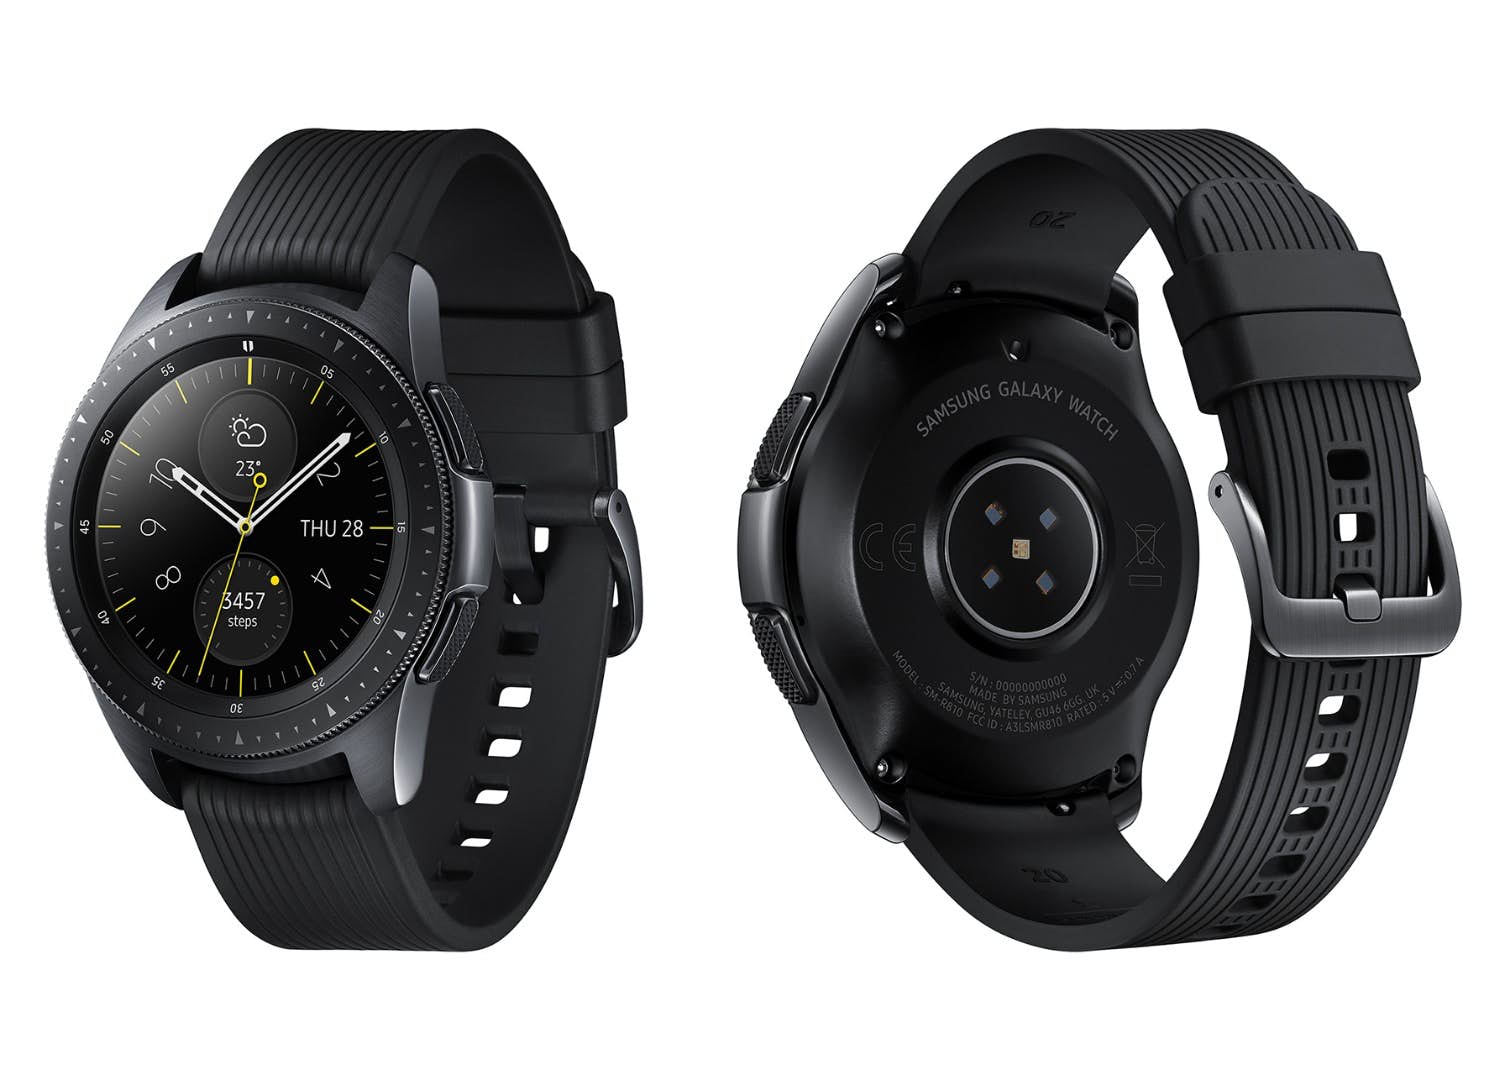 Galaxy watch 43. Samsung Galaxy watch r810 42mm. Samsung Galaxy watch SM-r810. Samsung Galaxy watch 42mm Black. Samsung Galaxy watch 42 мм Black.